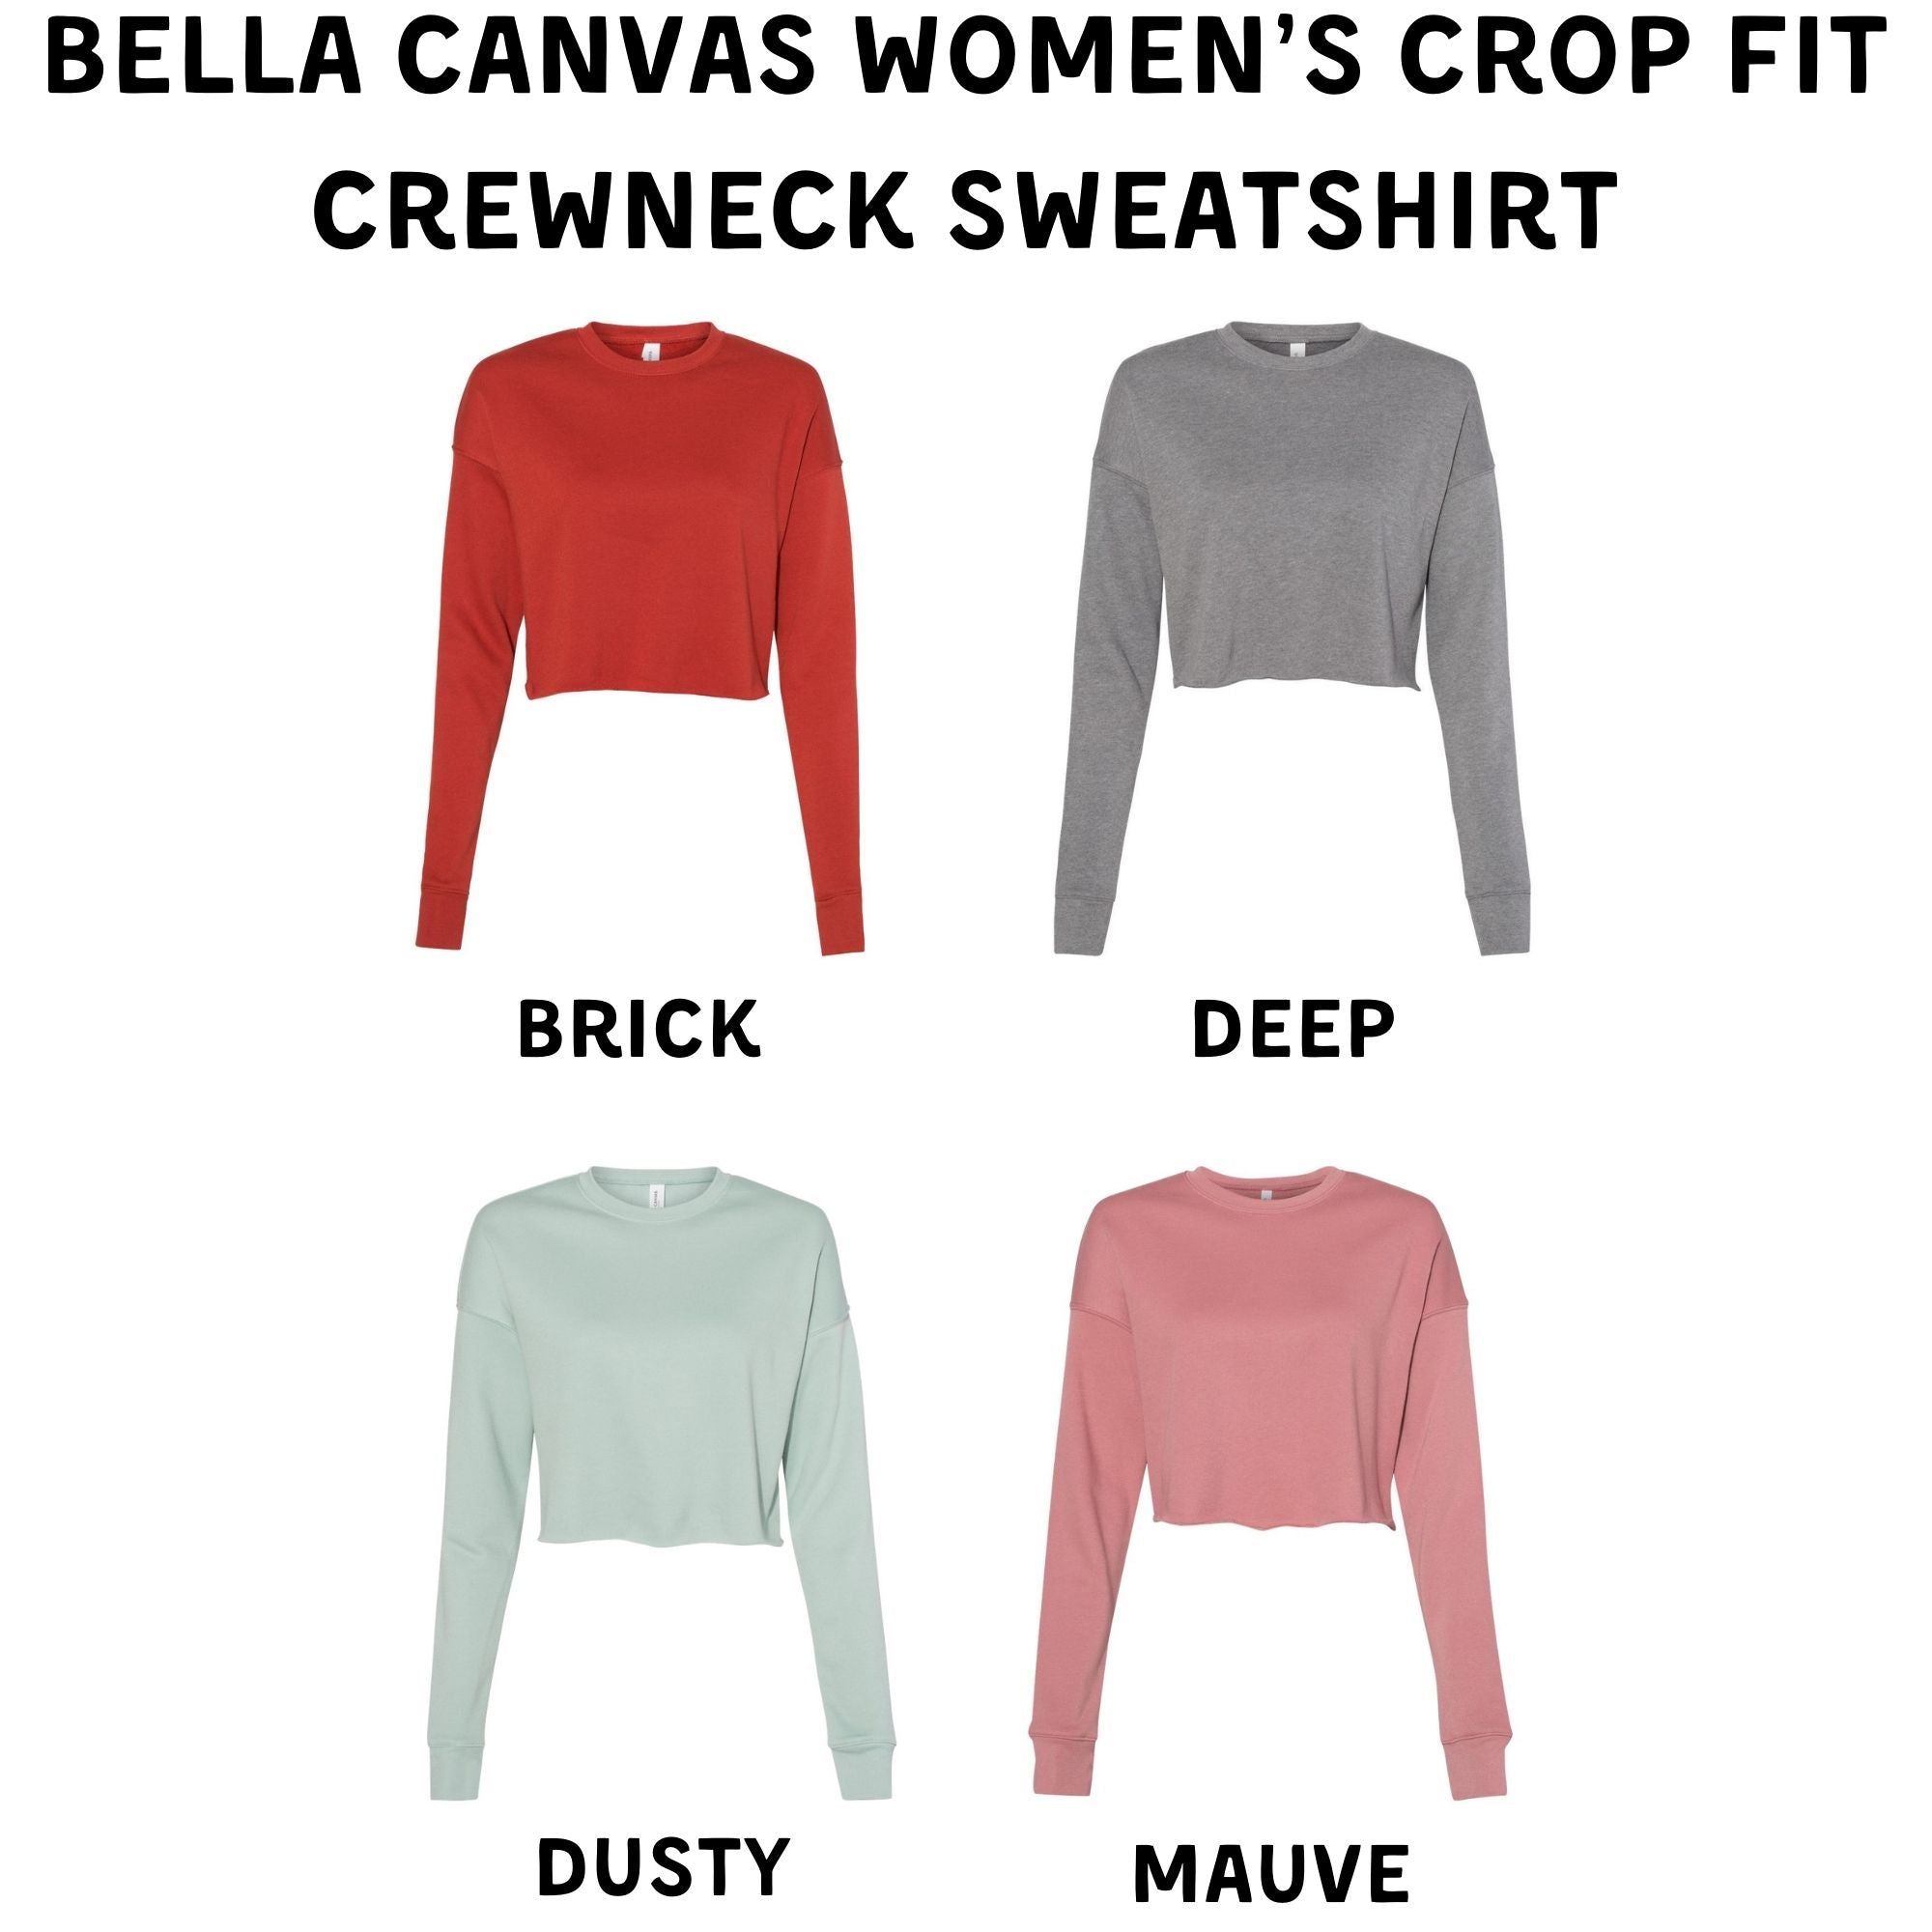 Traveler Cropped Sweatshirt or Crop Hoodie *Women's Crop Fit*-208 Tees Wholesale, Idaho